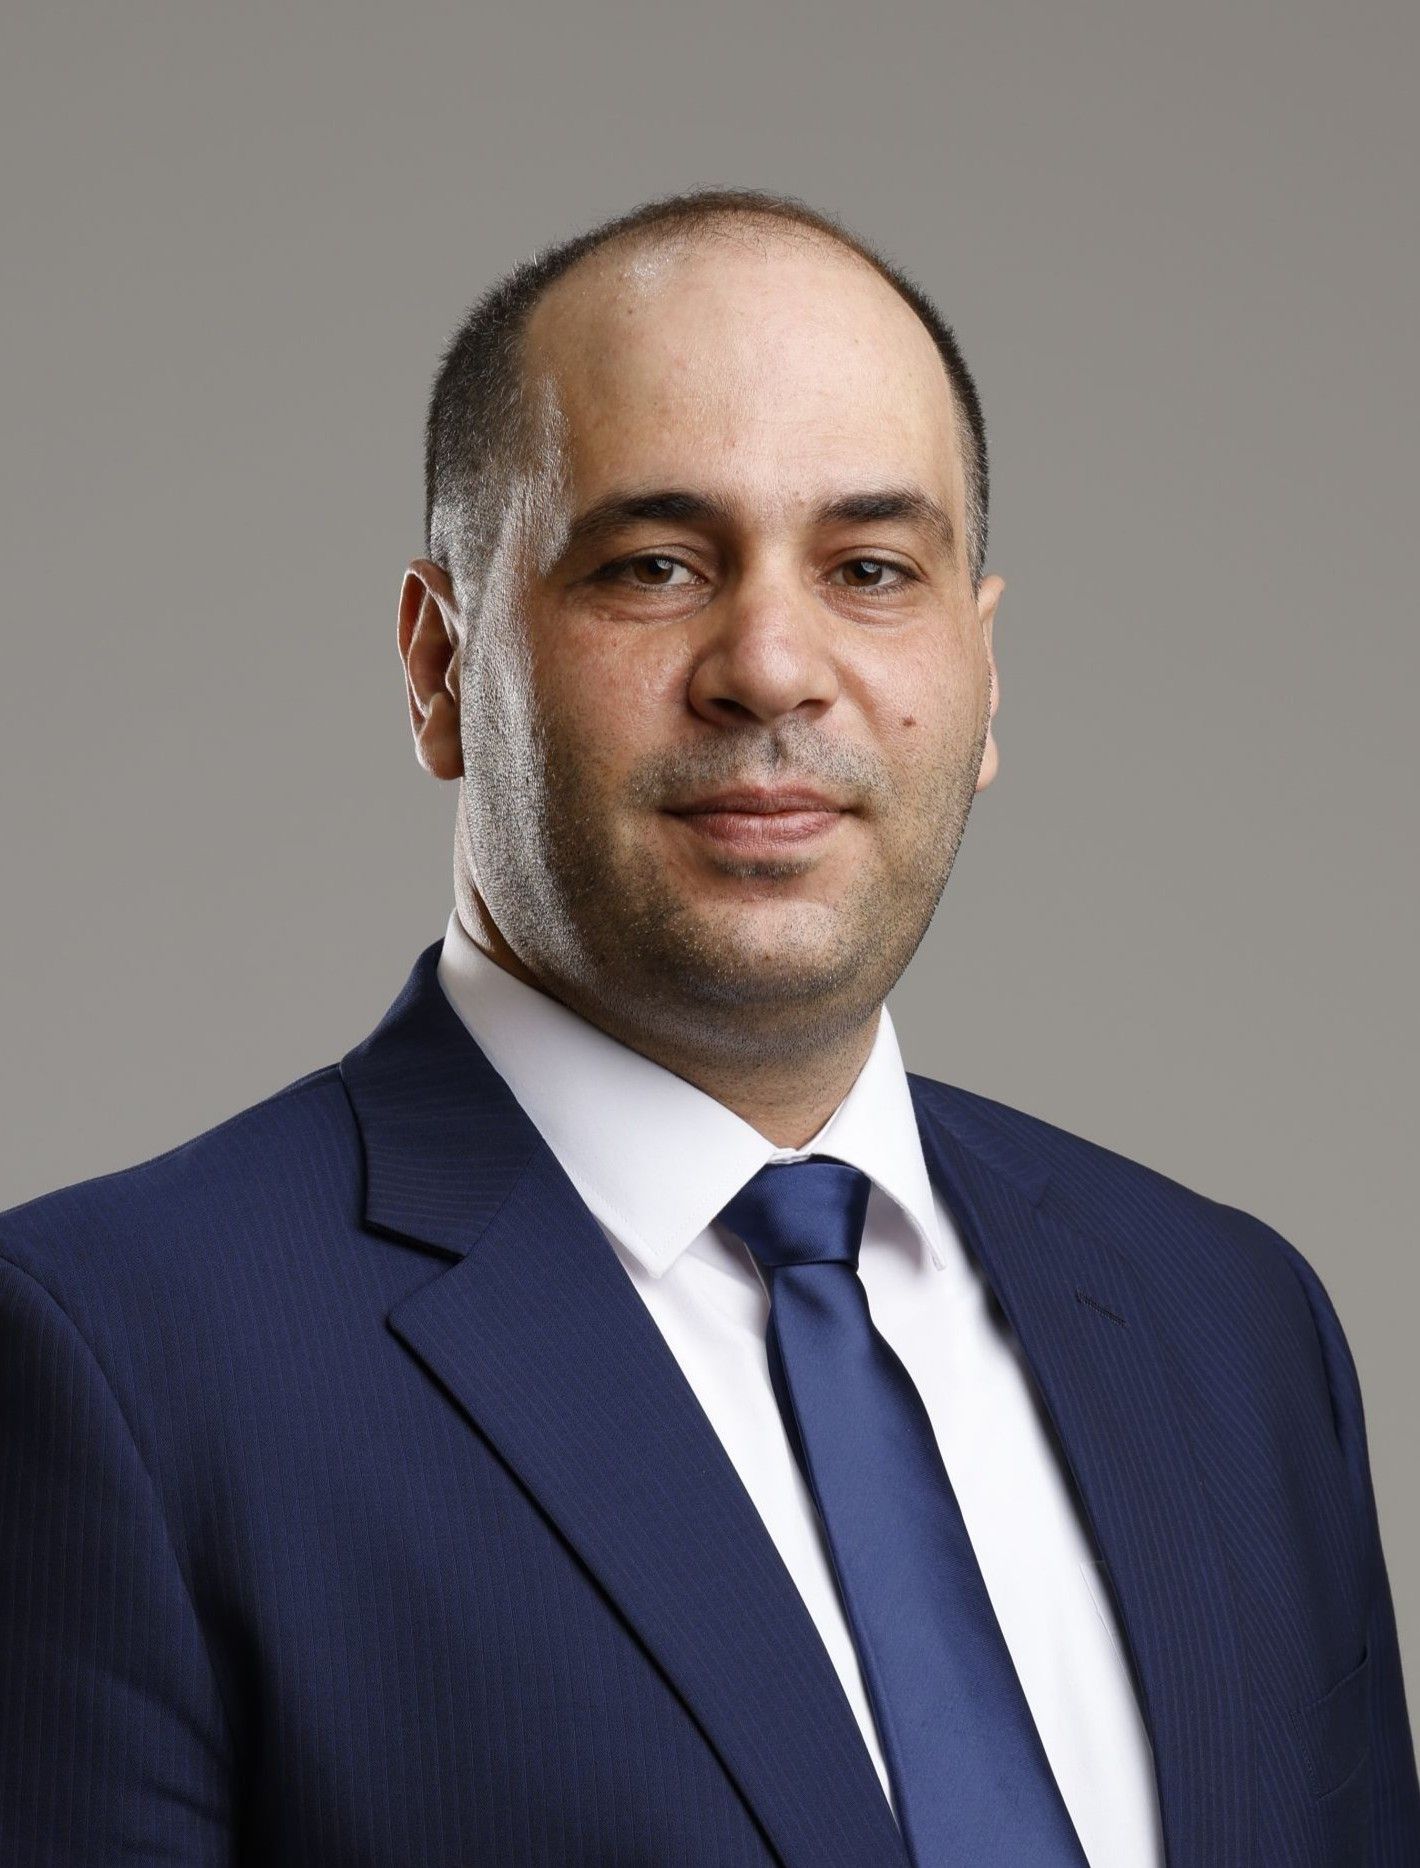 Jawad Altamimi